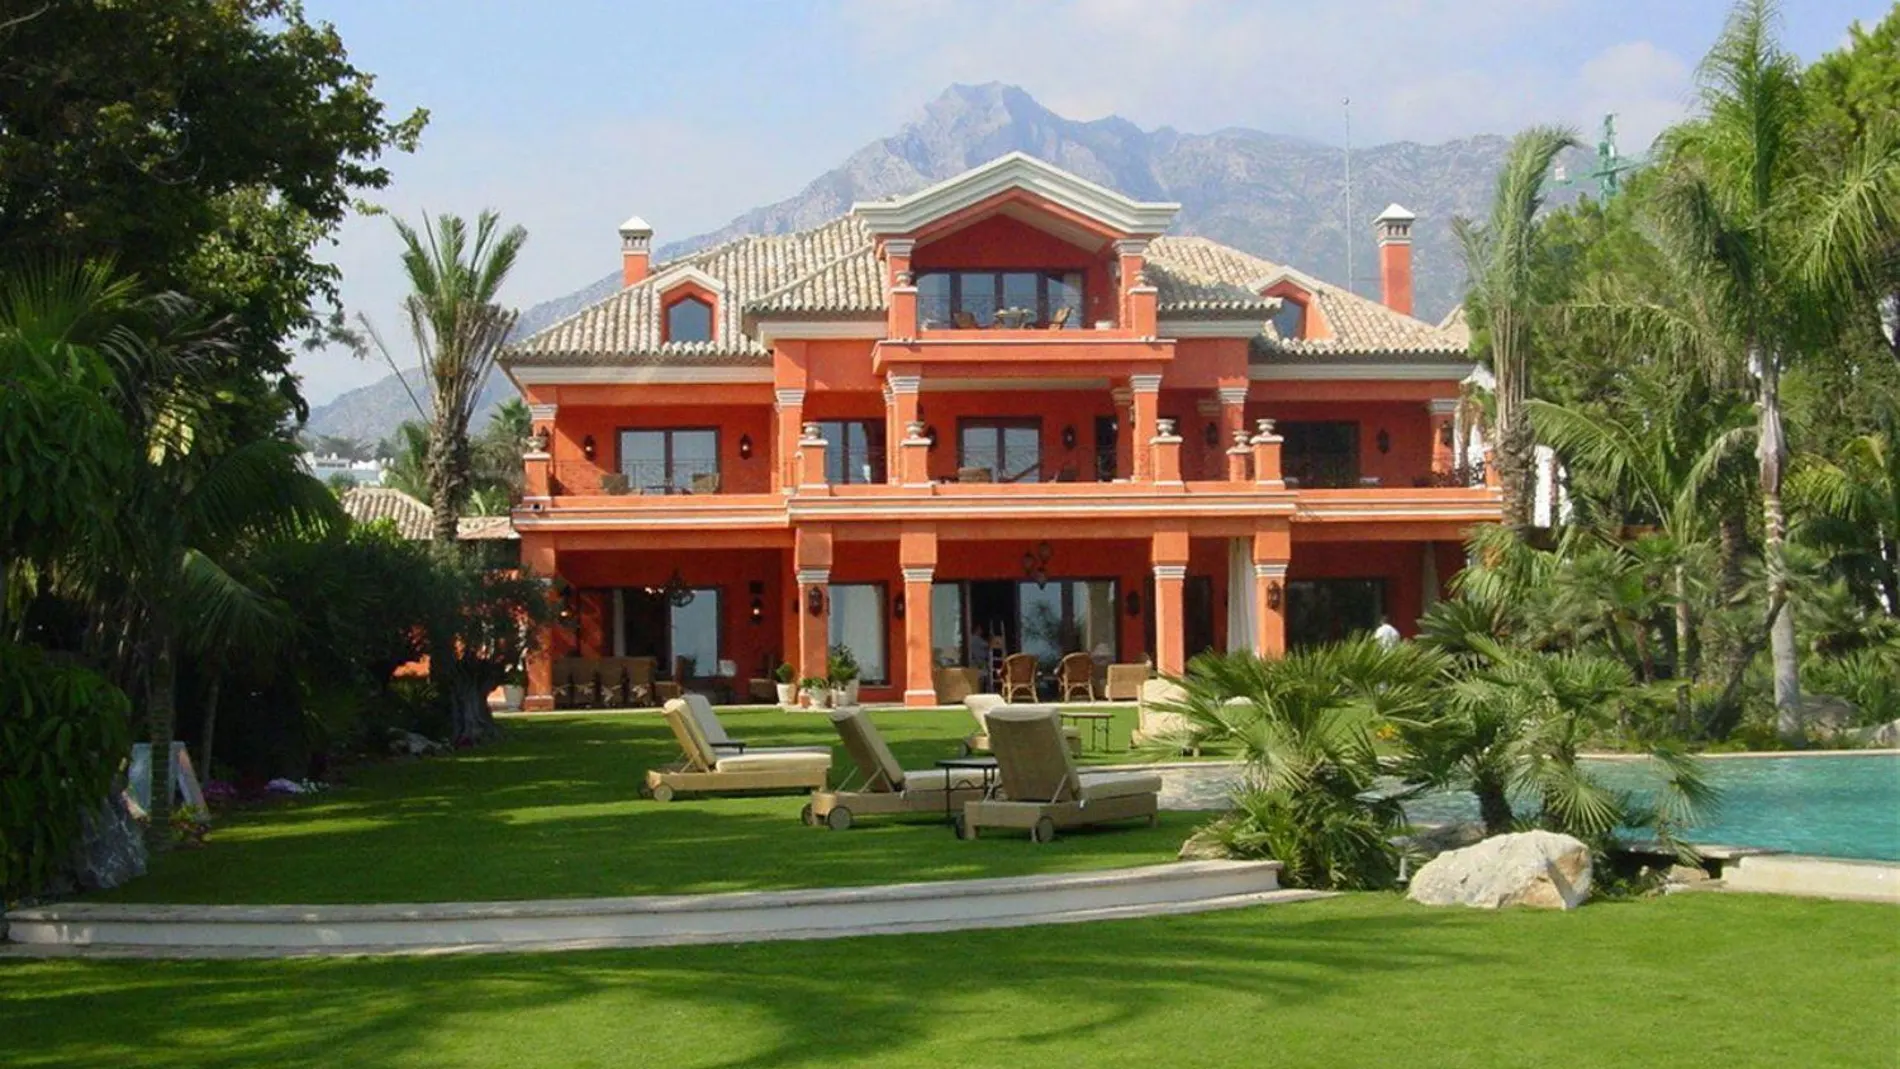 Una mansión de 55 millones de euros, la vivienda más cara de España